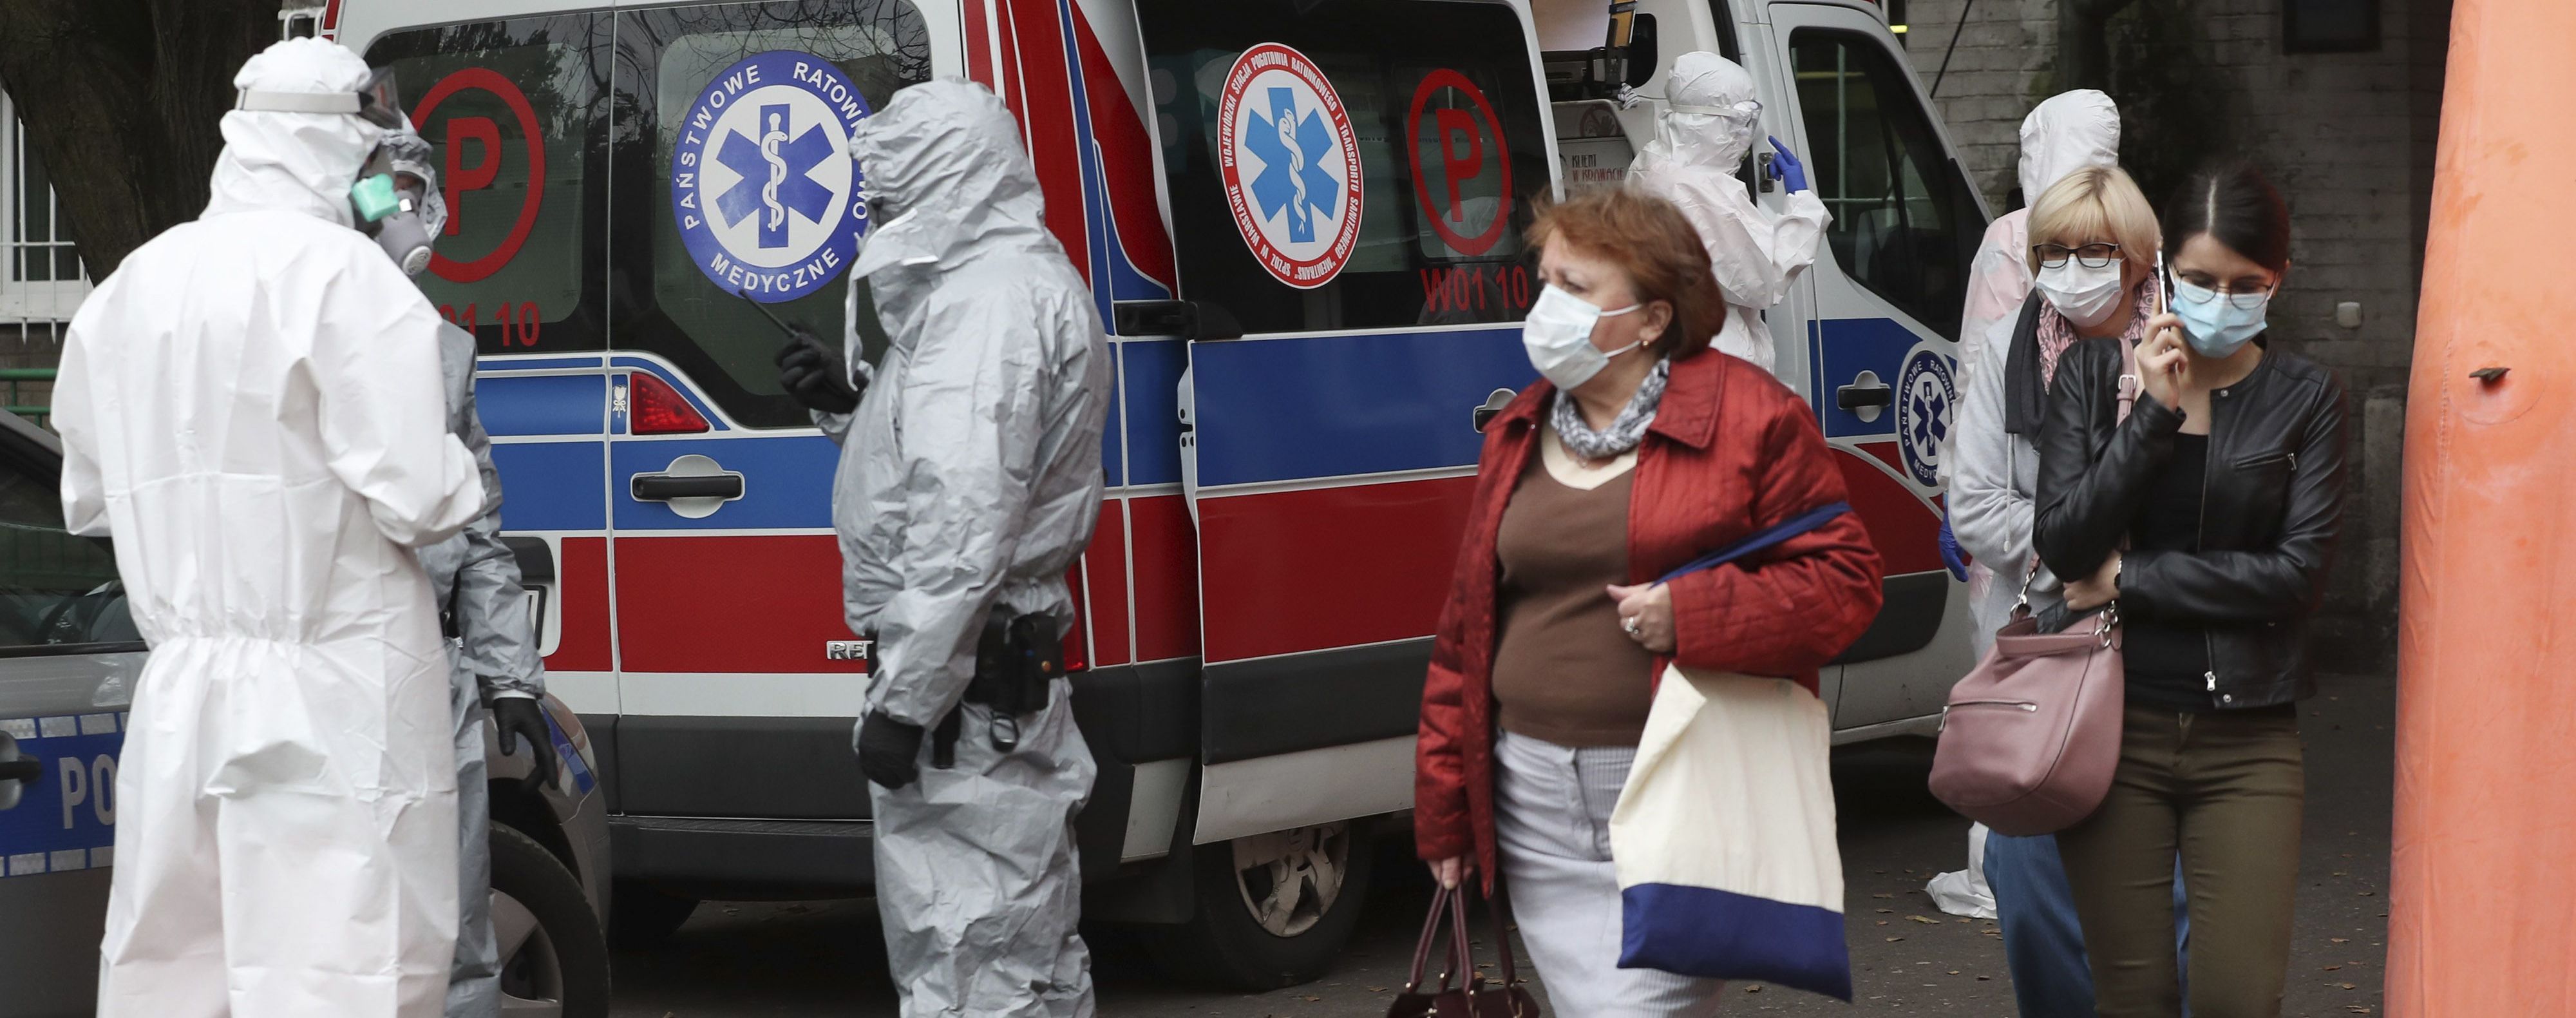 Польща йде на тотальну ізоляцію: через спалах коронавірусу країна потрапила до "червоної" зони